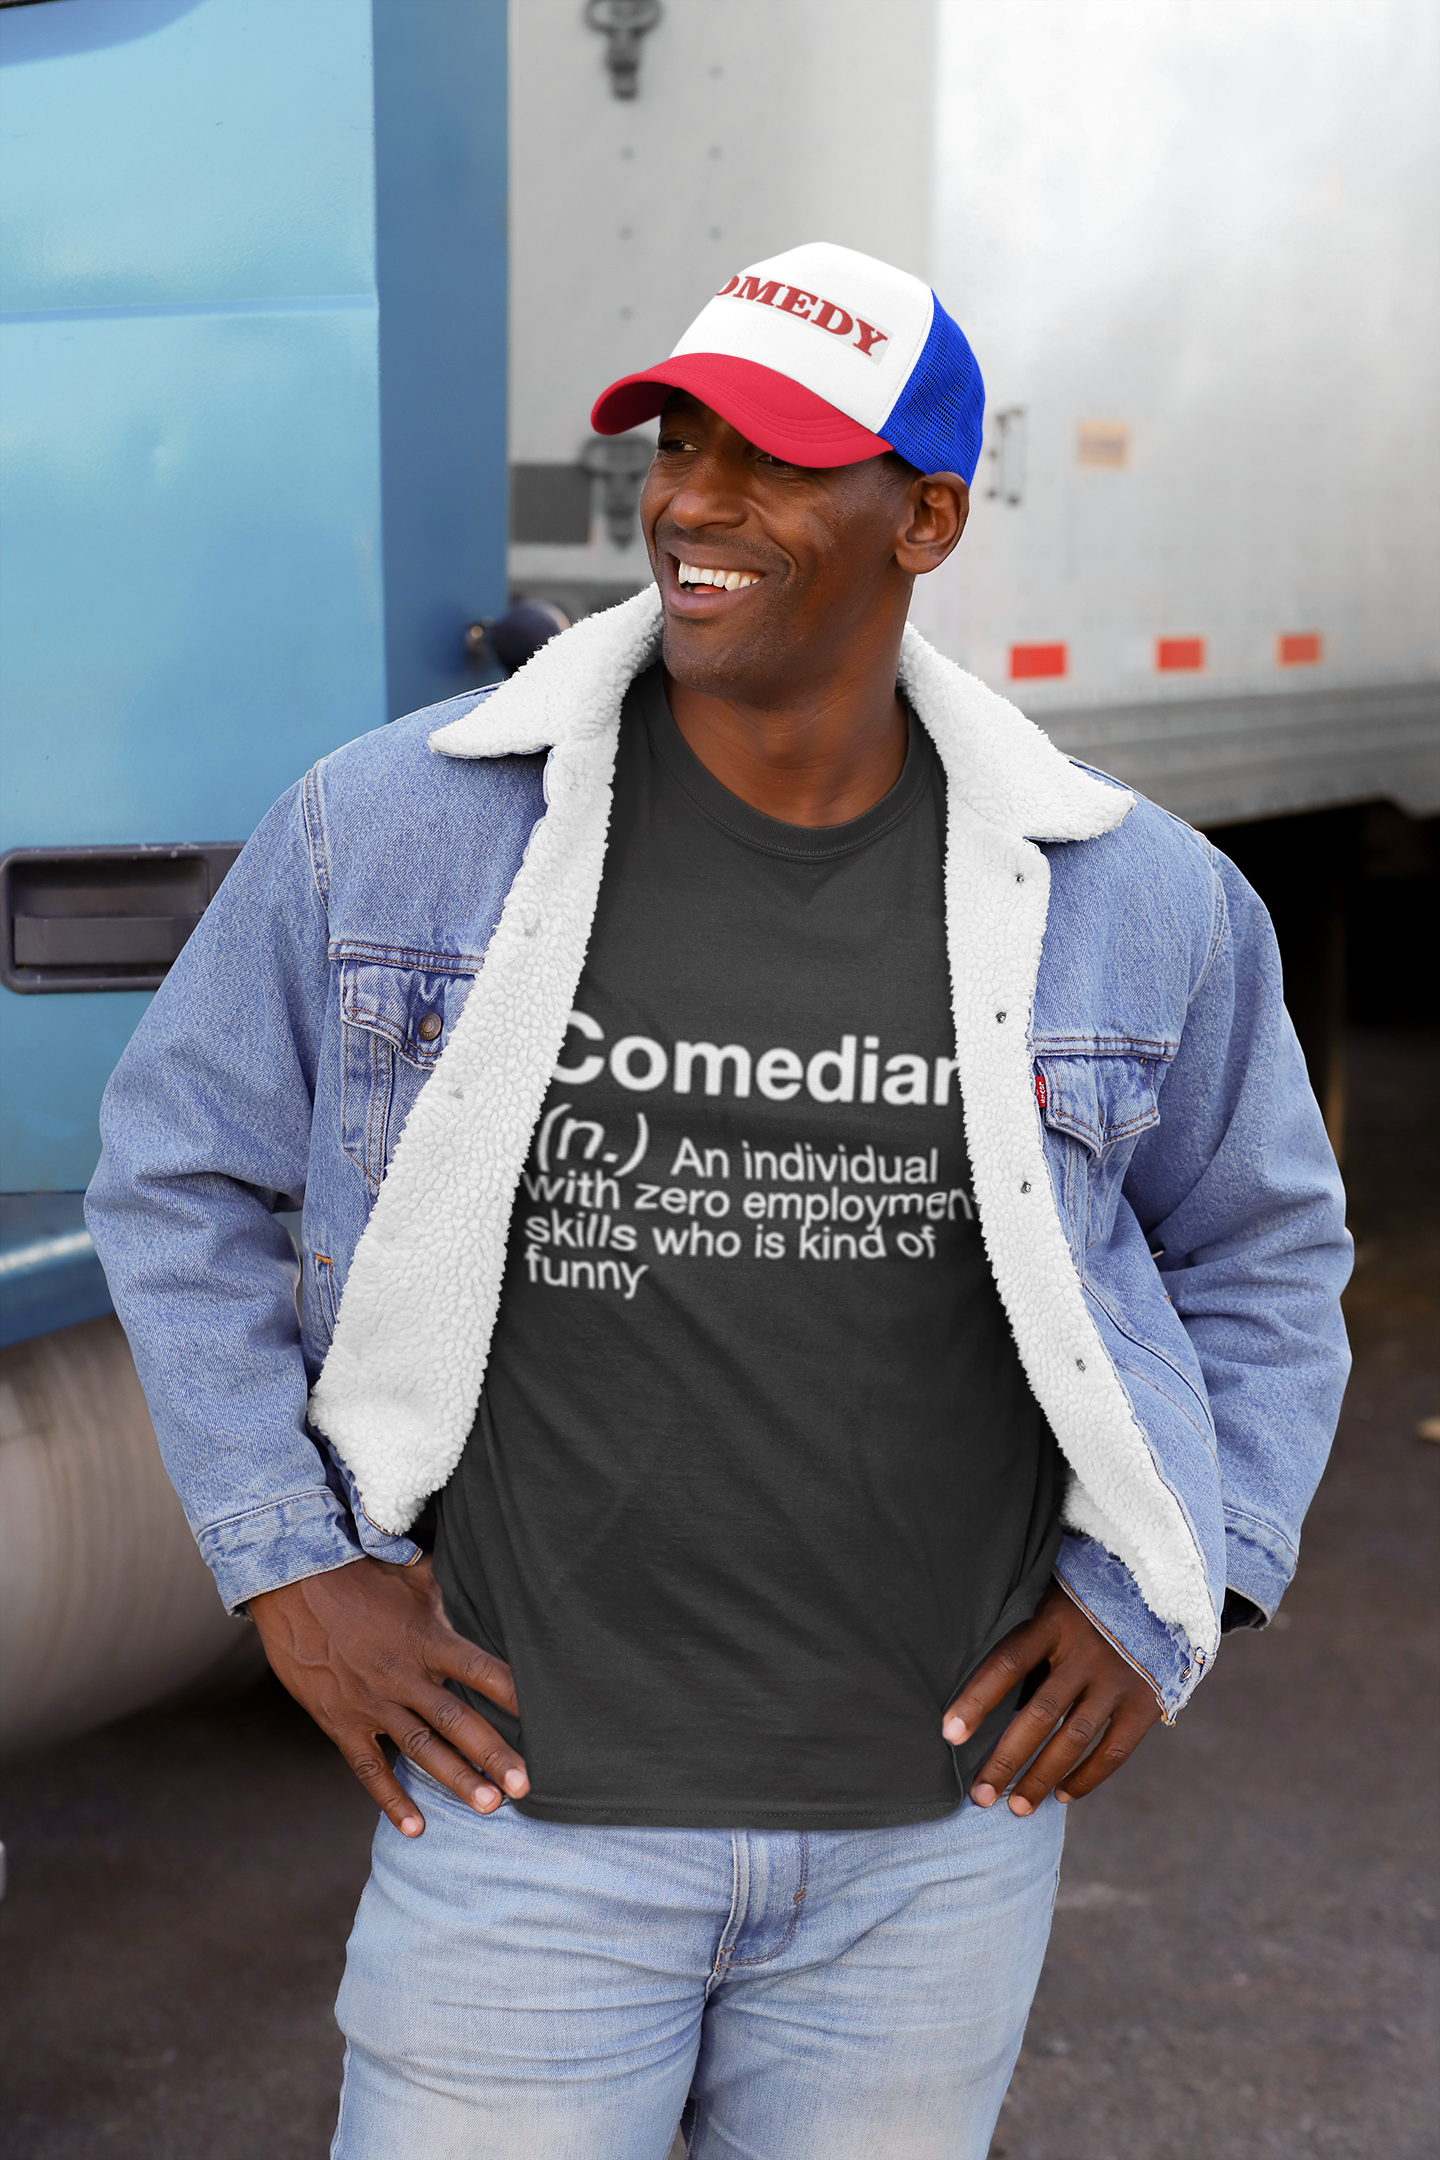 FunnyComedyTeeShirts, FunnyComedyTeeShirts.com, TheComedyConsultant Shop, Comedian Definition T-Shirt, Comedian T-Shirts, Comedy Hat, Comedy Hats And Apparel, Funny T-Shirts, Funny Tees, Buy Funny T-Shirts, Buy Humor T-Shirts, Humorous T-Shirts, Witty T-Shirts, Trucker Hats Comedy, Funny Apparel, Buy On TeeSpring, The Comedy Writers And Consultants, TheComedyConsultant.com